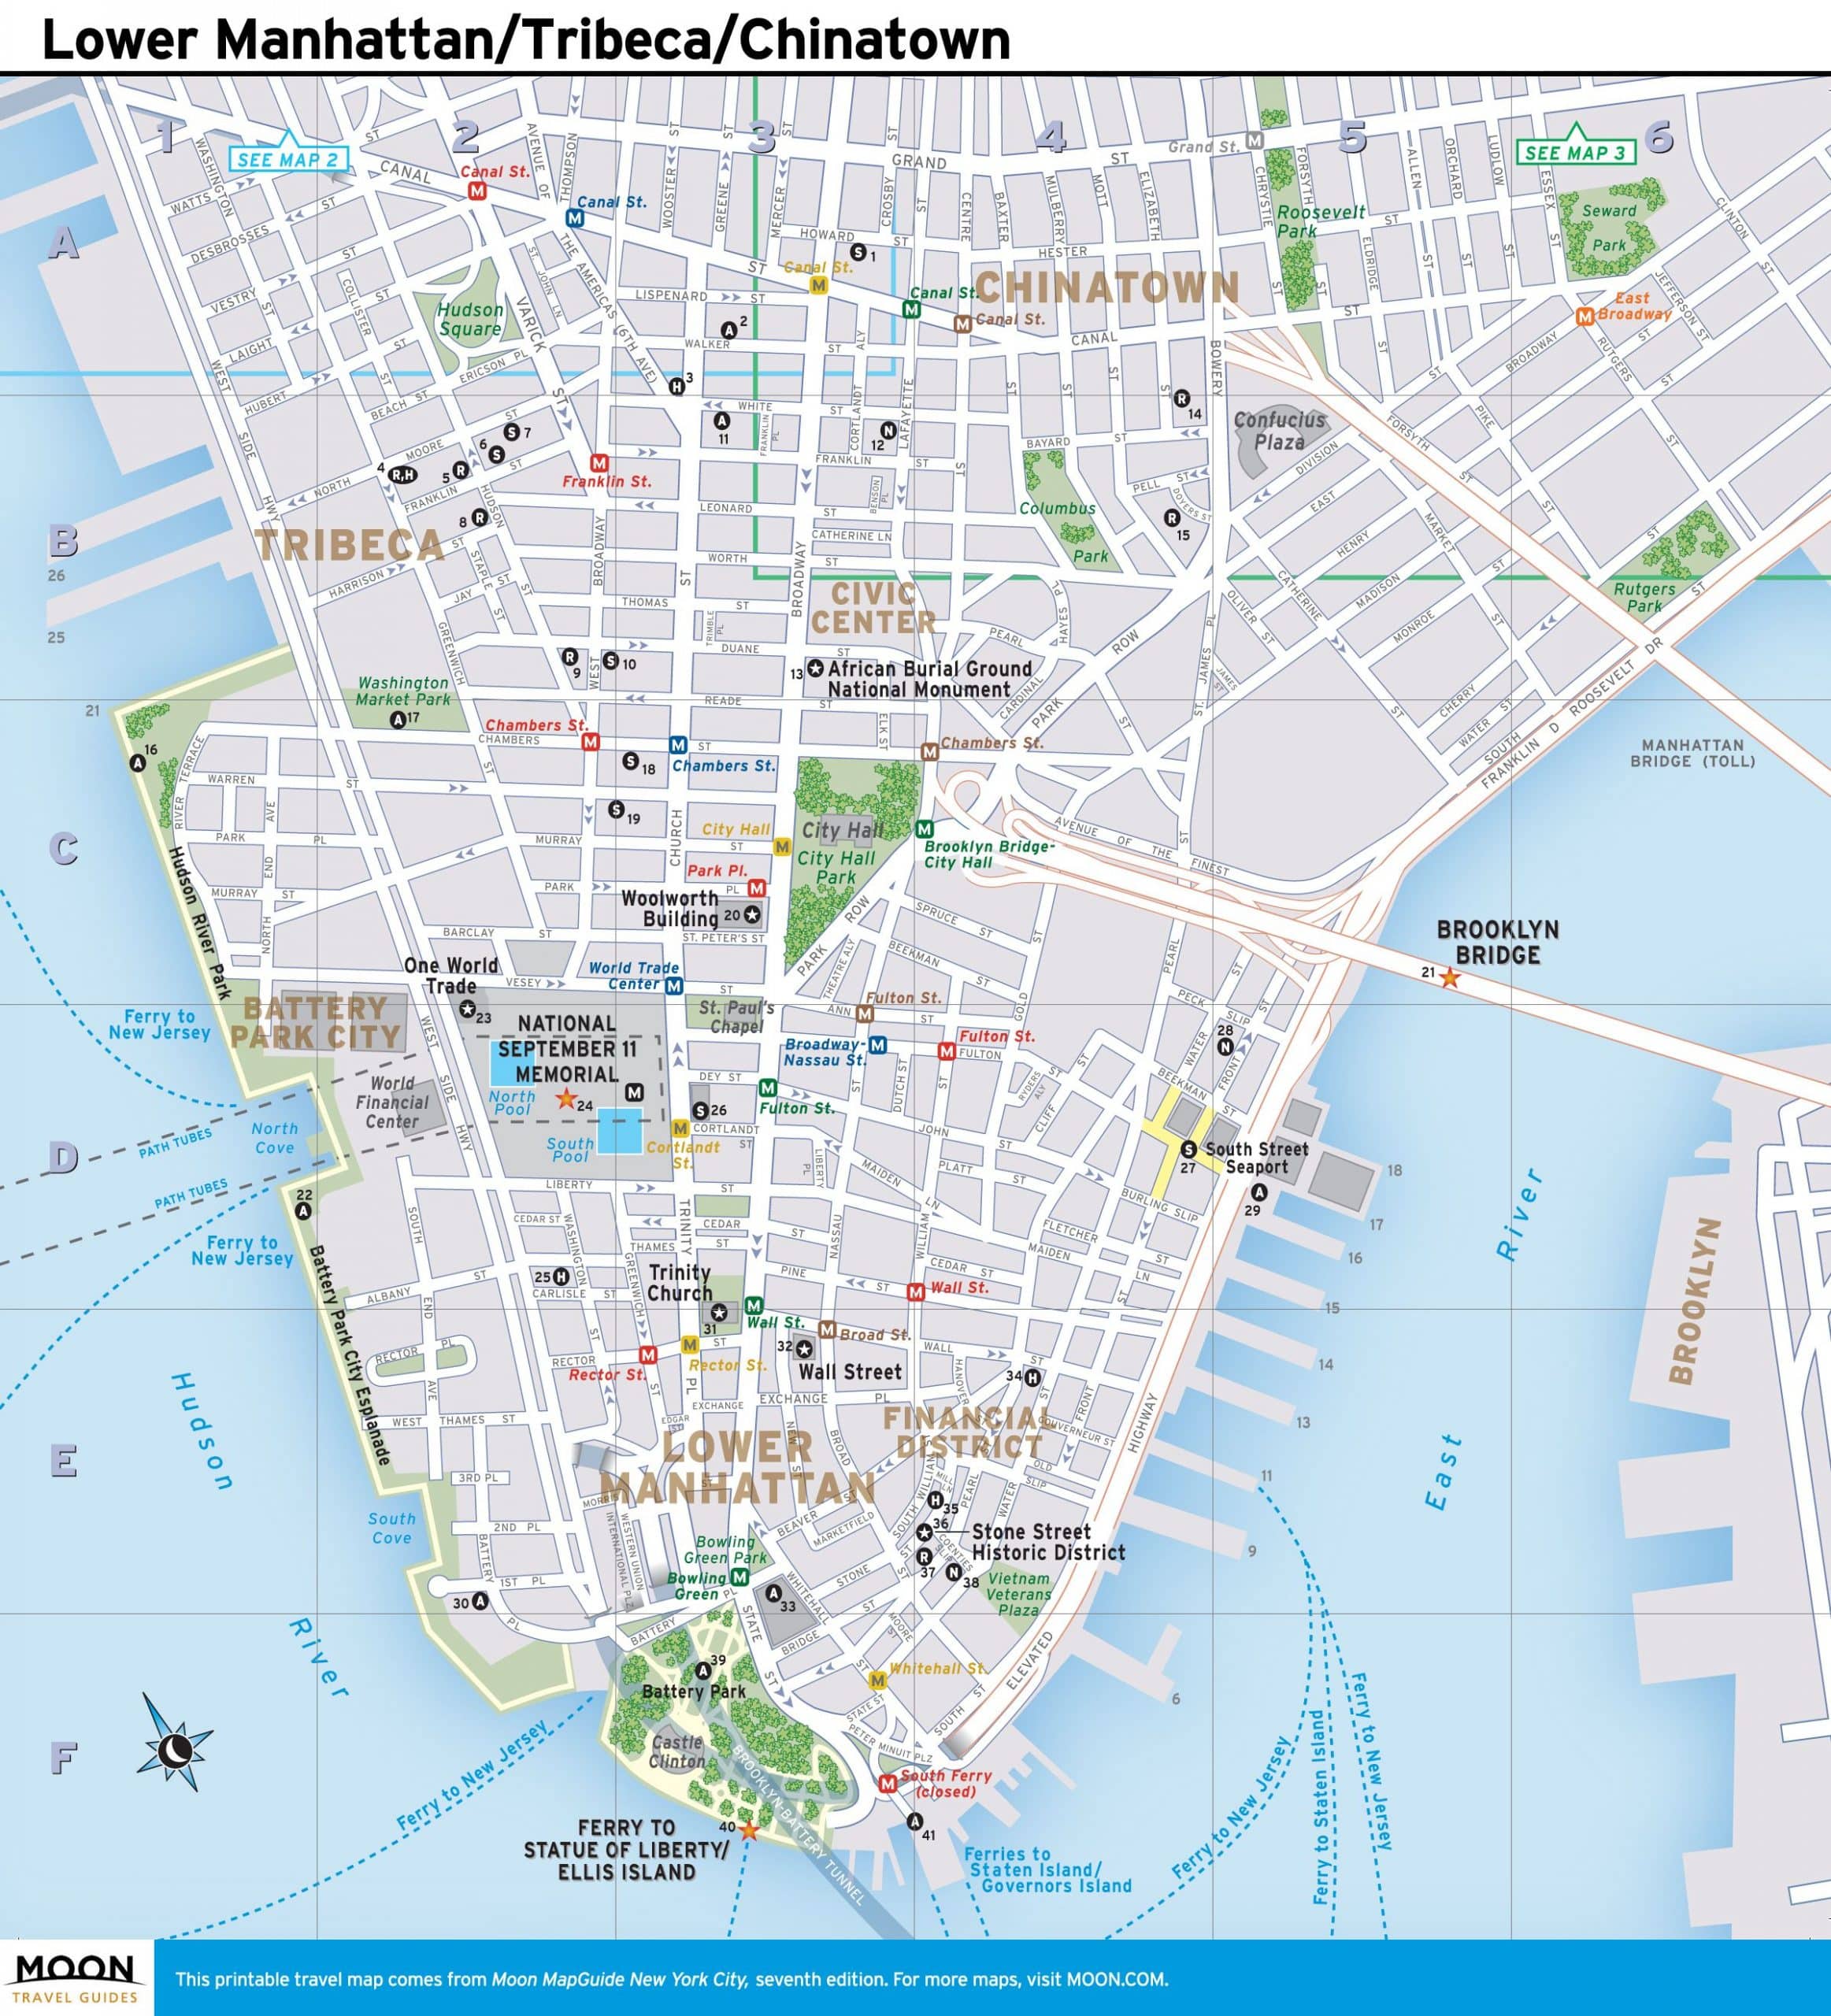 New York City Map: Lower Manhattan, Tribeca, and Chinatown